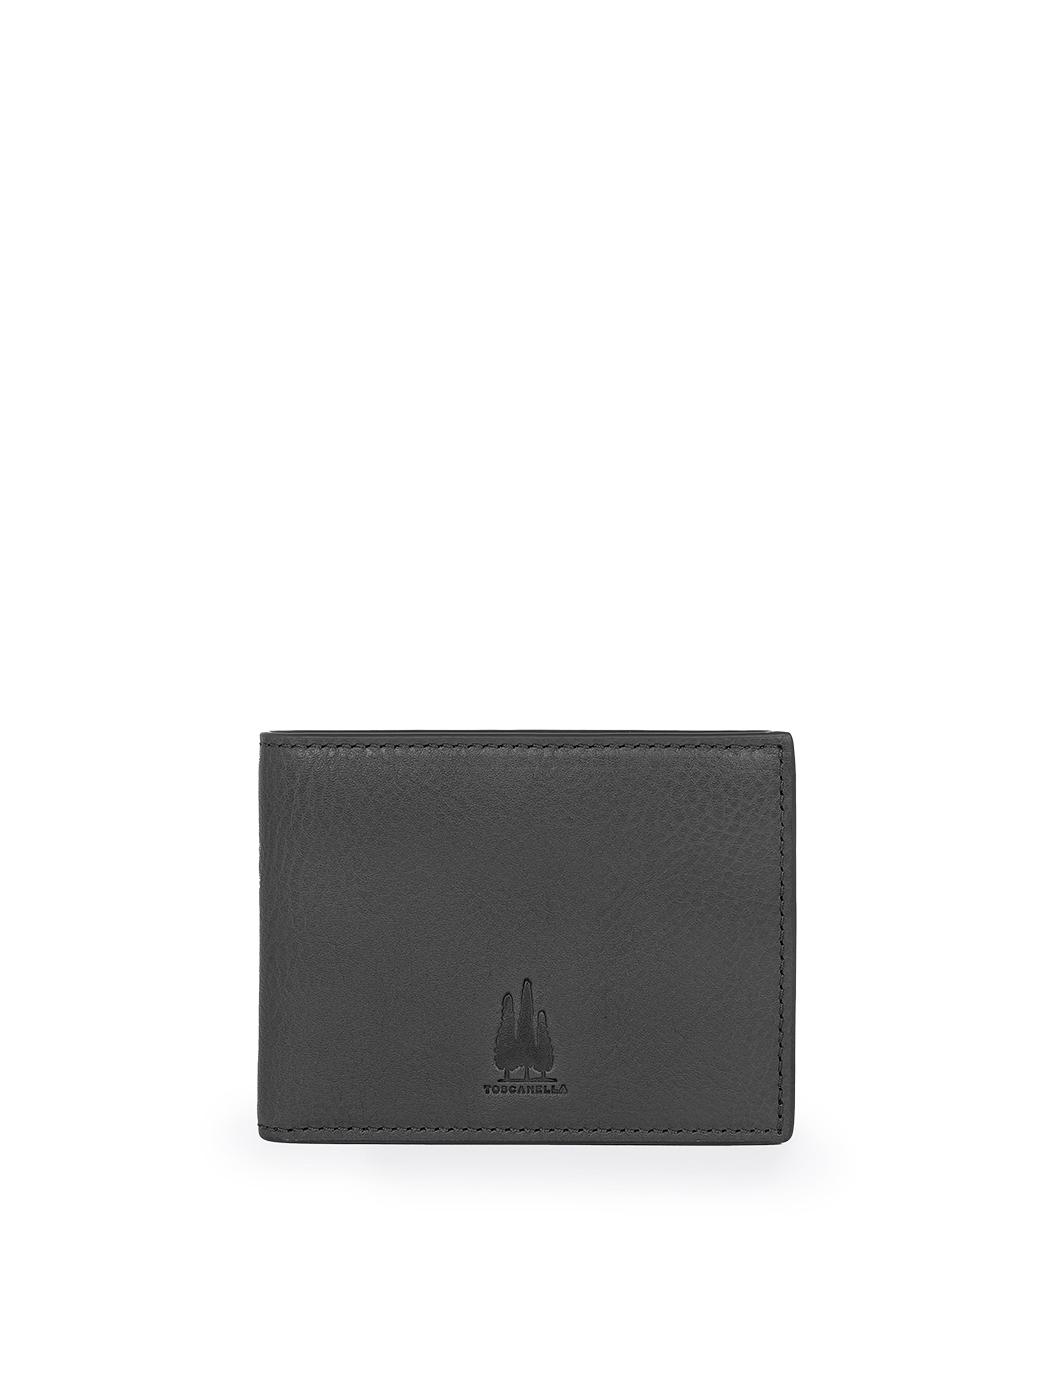 Billfold Wallet with ID Window Black